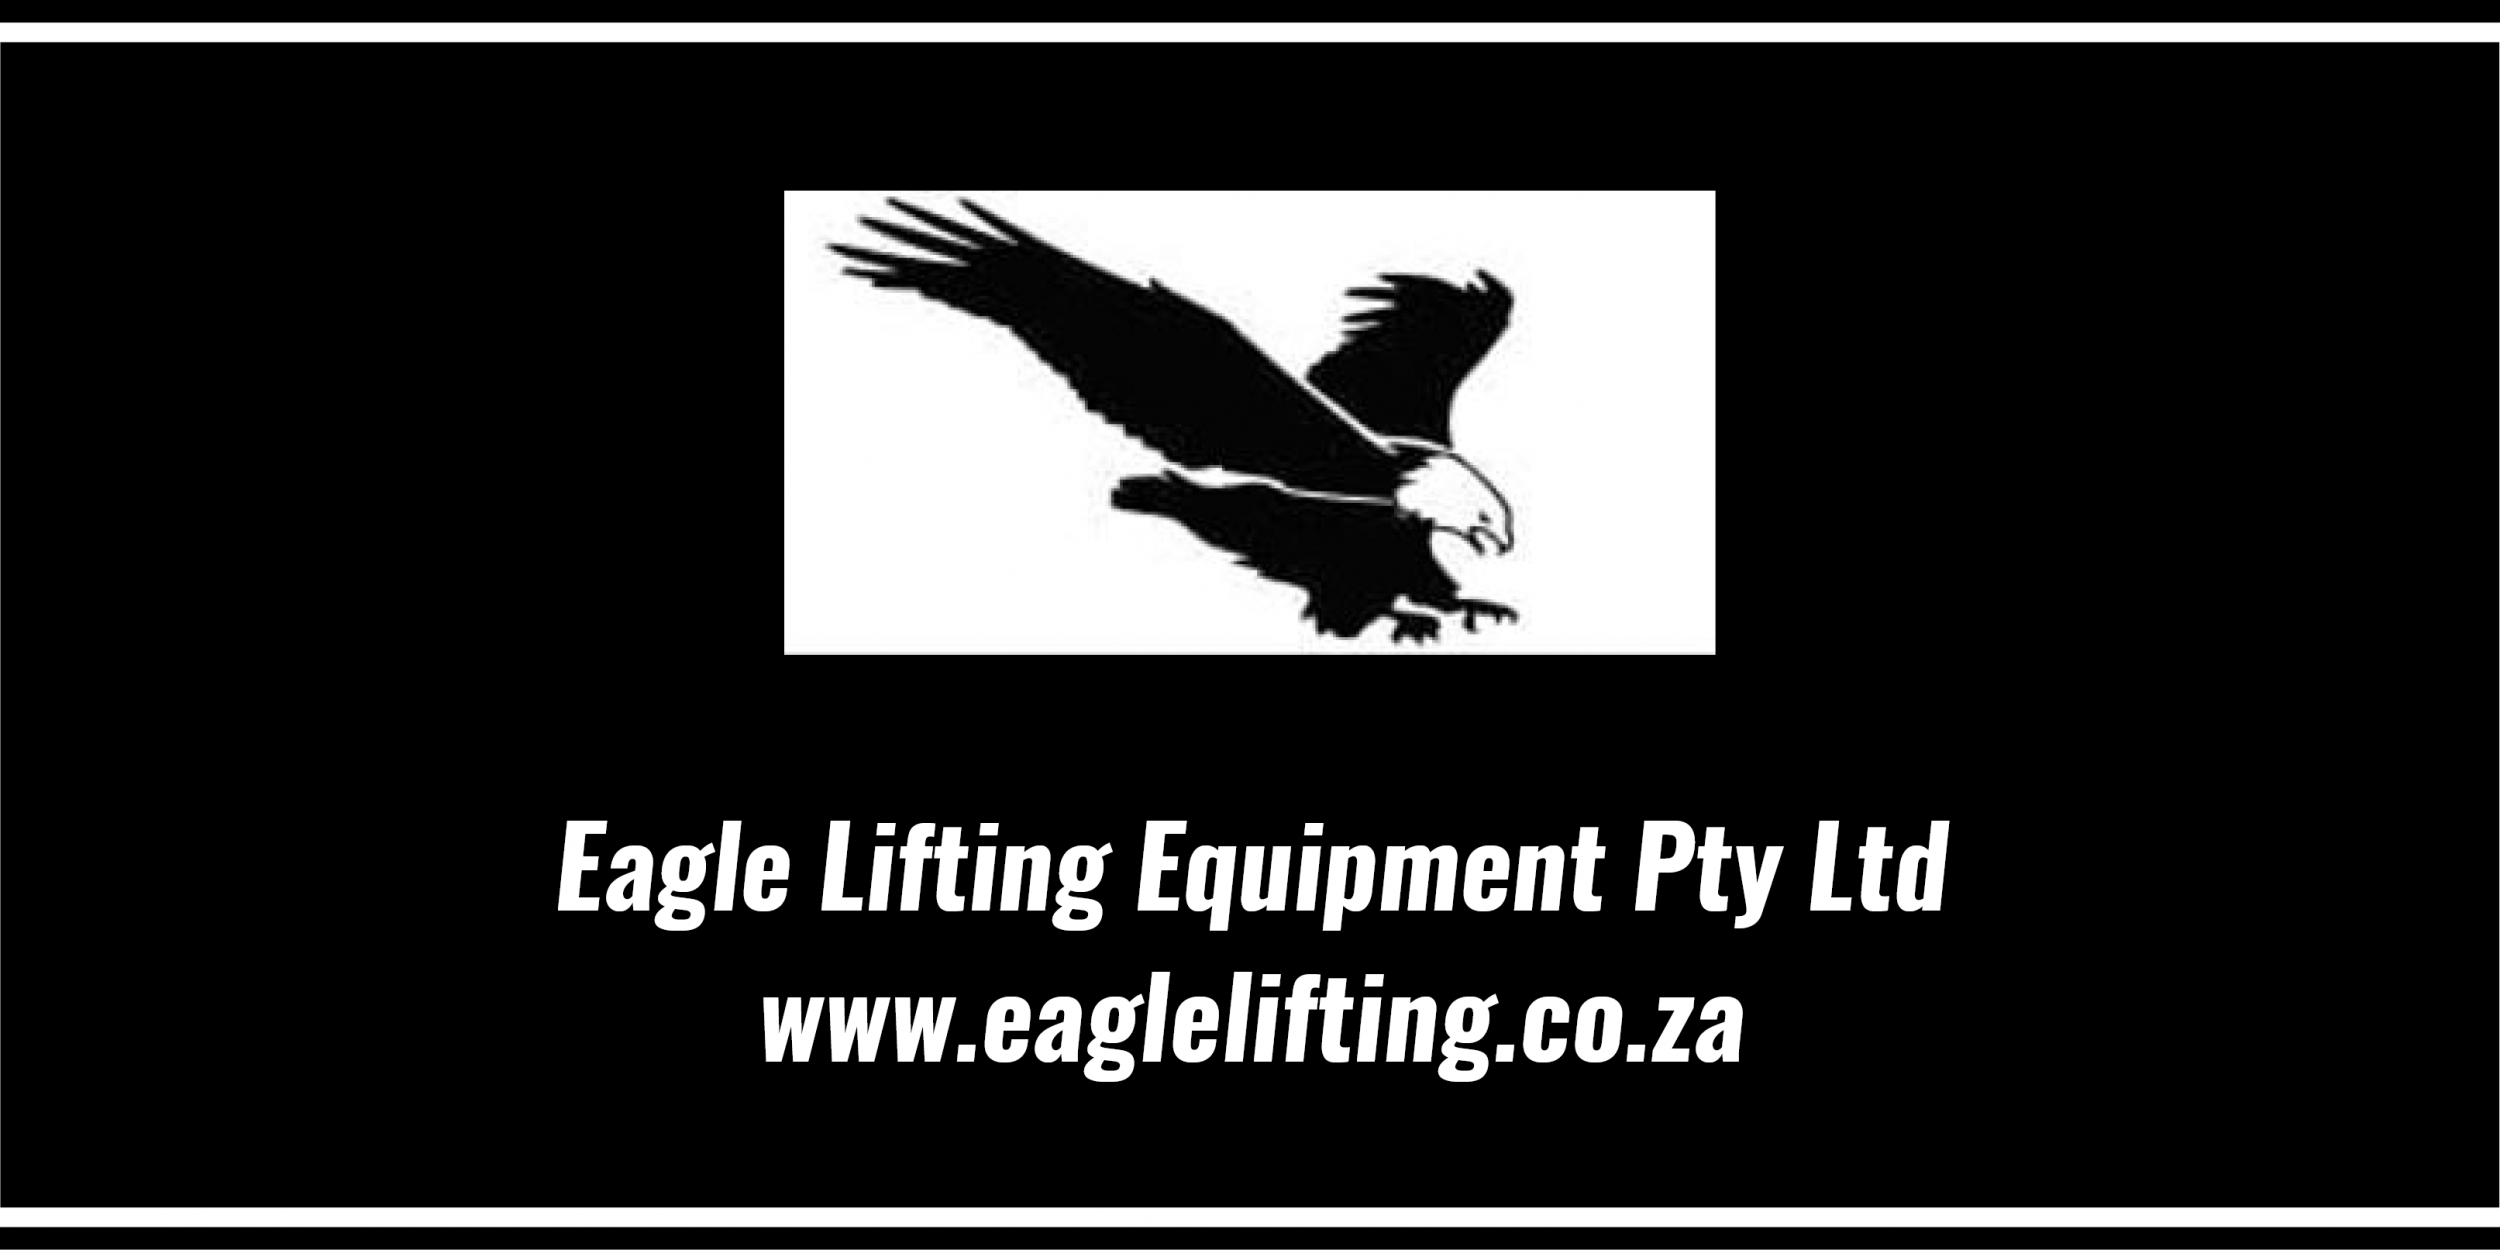 Eagle Lifting Equipment Pty Ltd